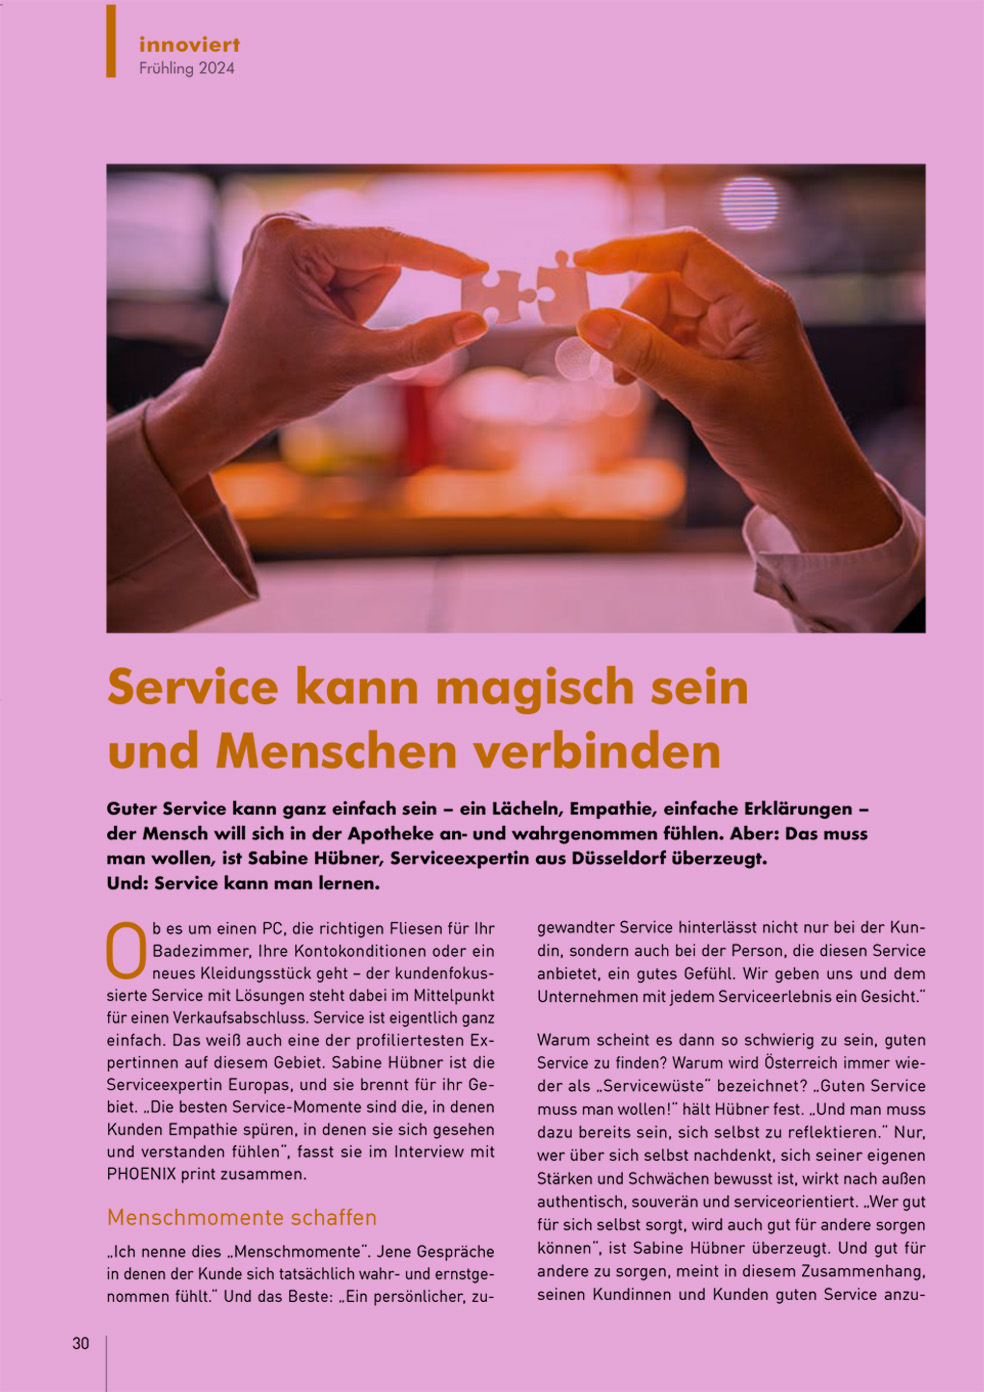 Service kann magisch sein und Menschen verbinden